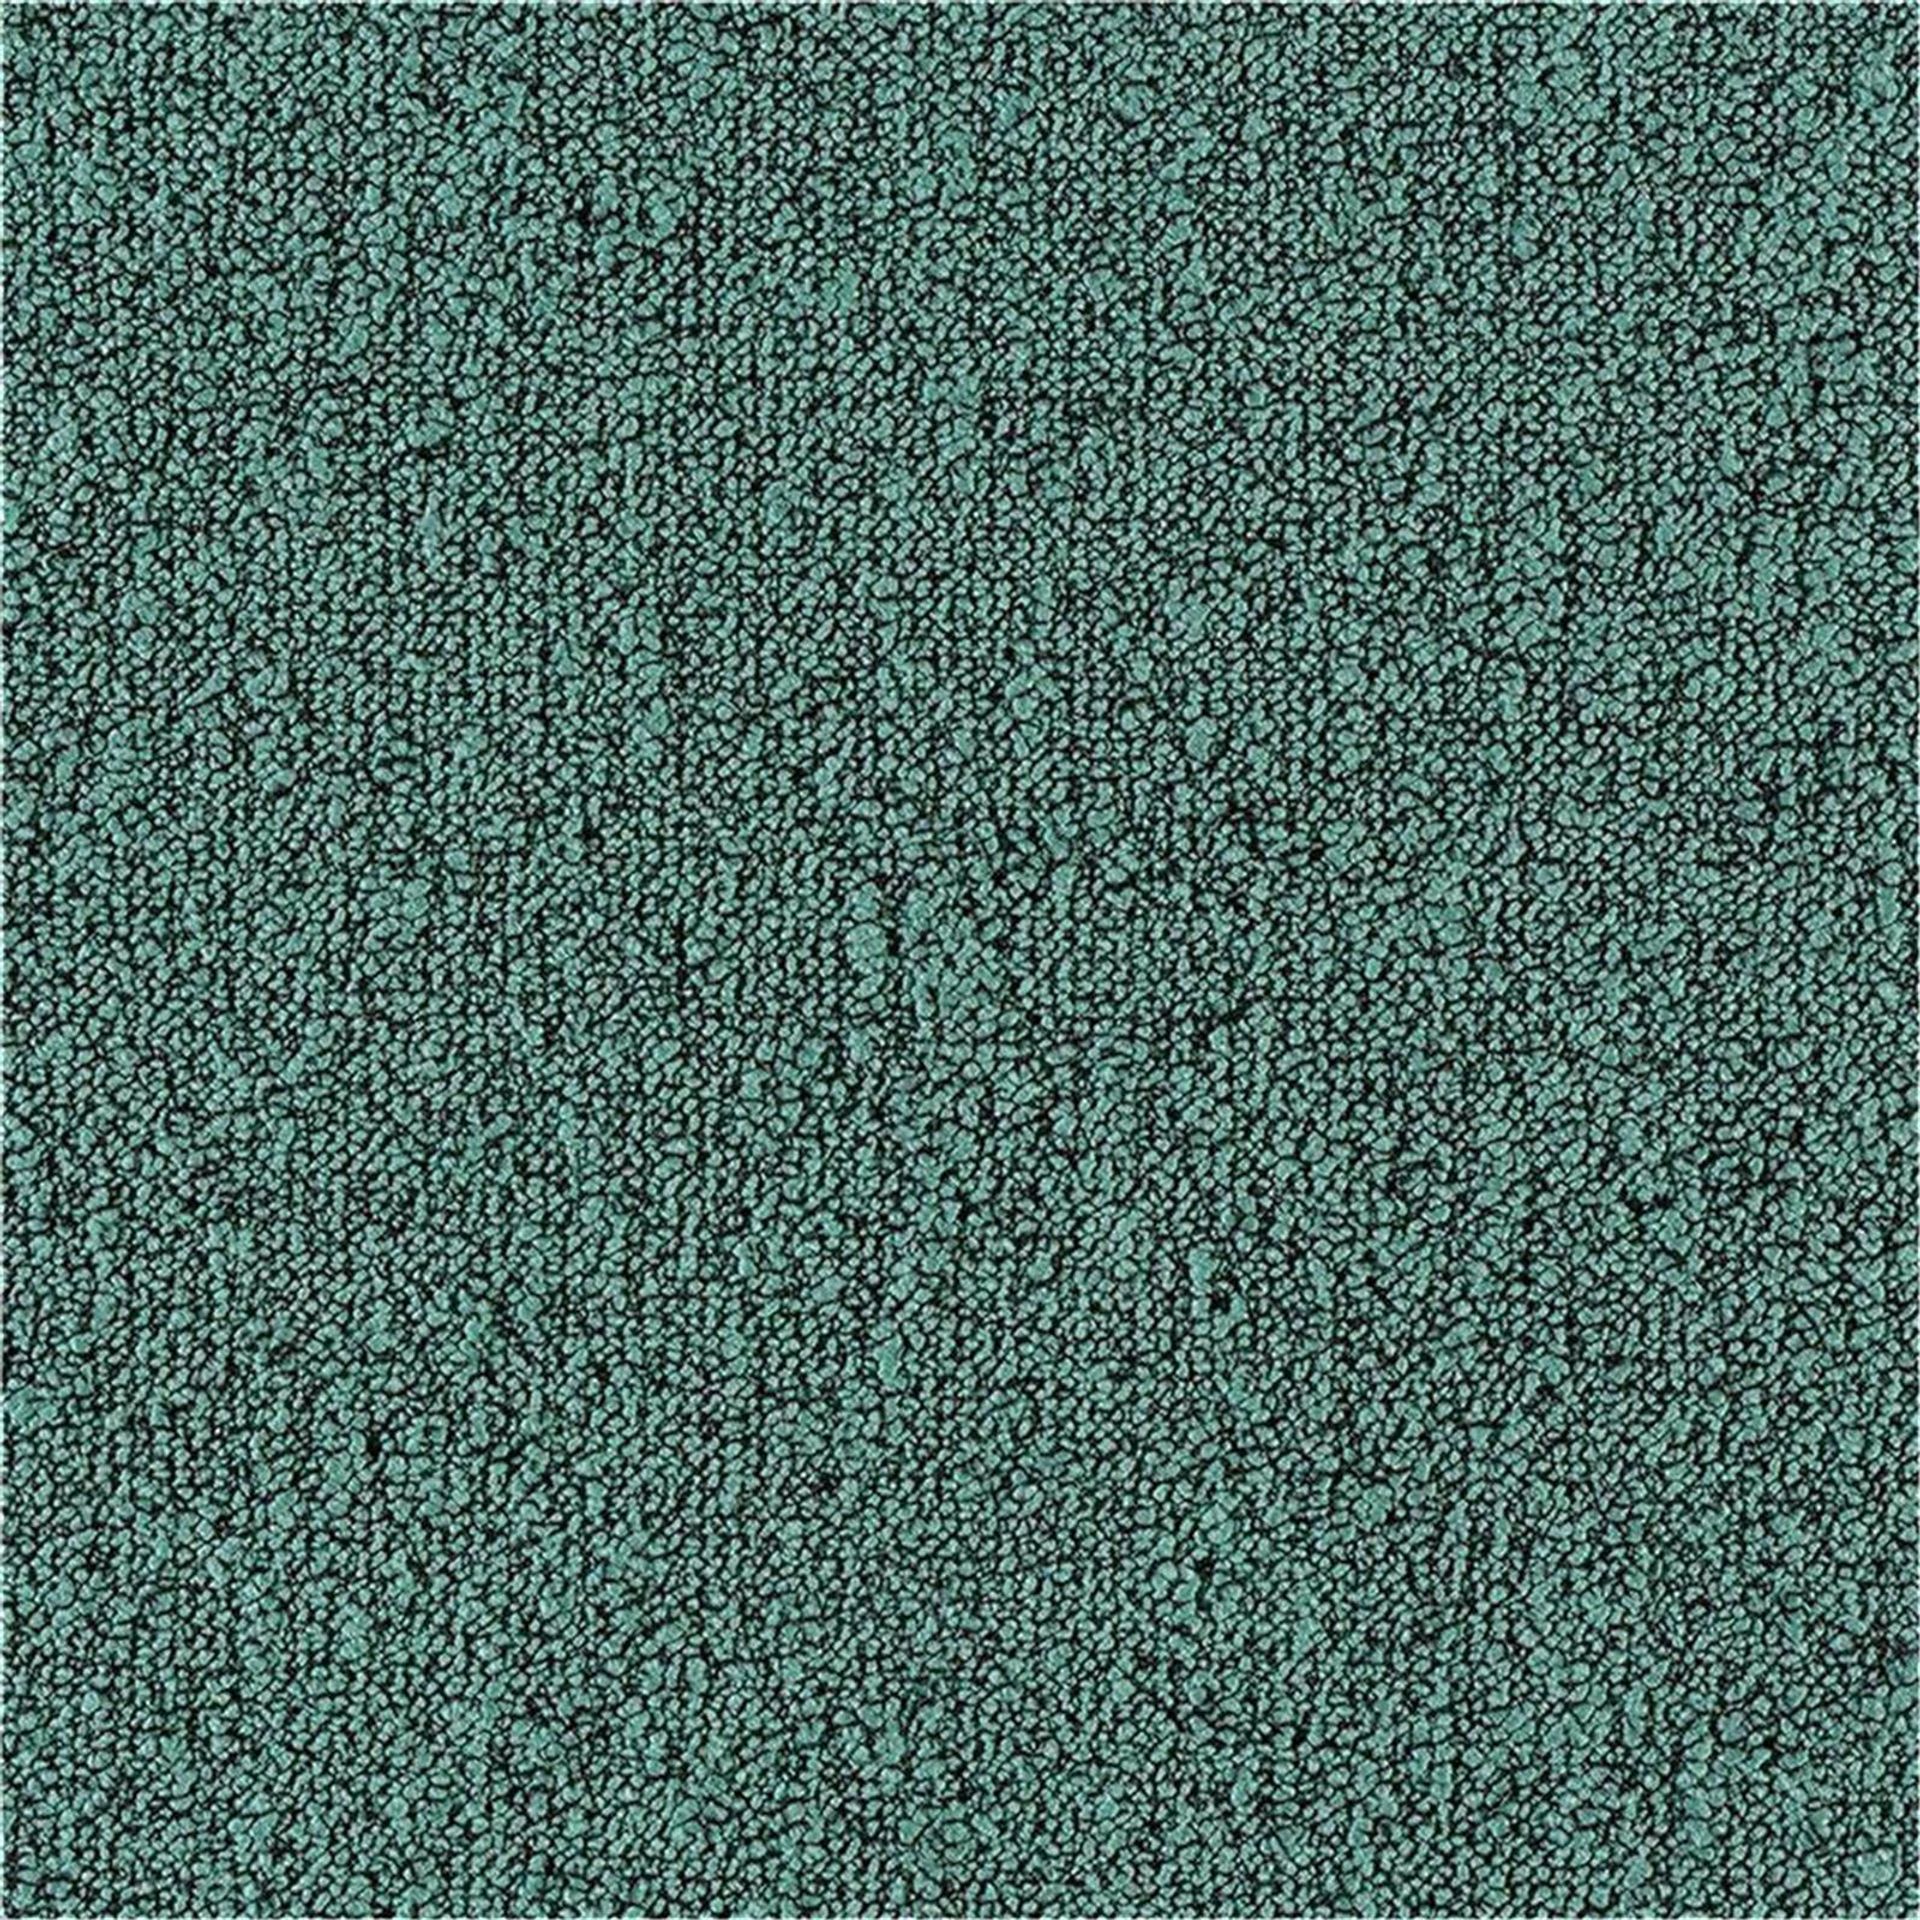 Teppichfliesen 50 x 50 cm Schlinge strukturiert Fields B751 7814 Grün Allover